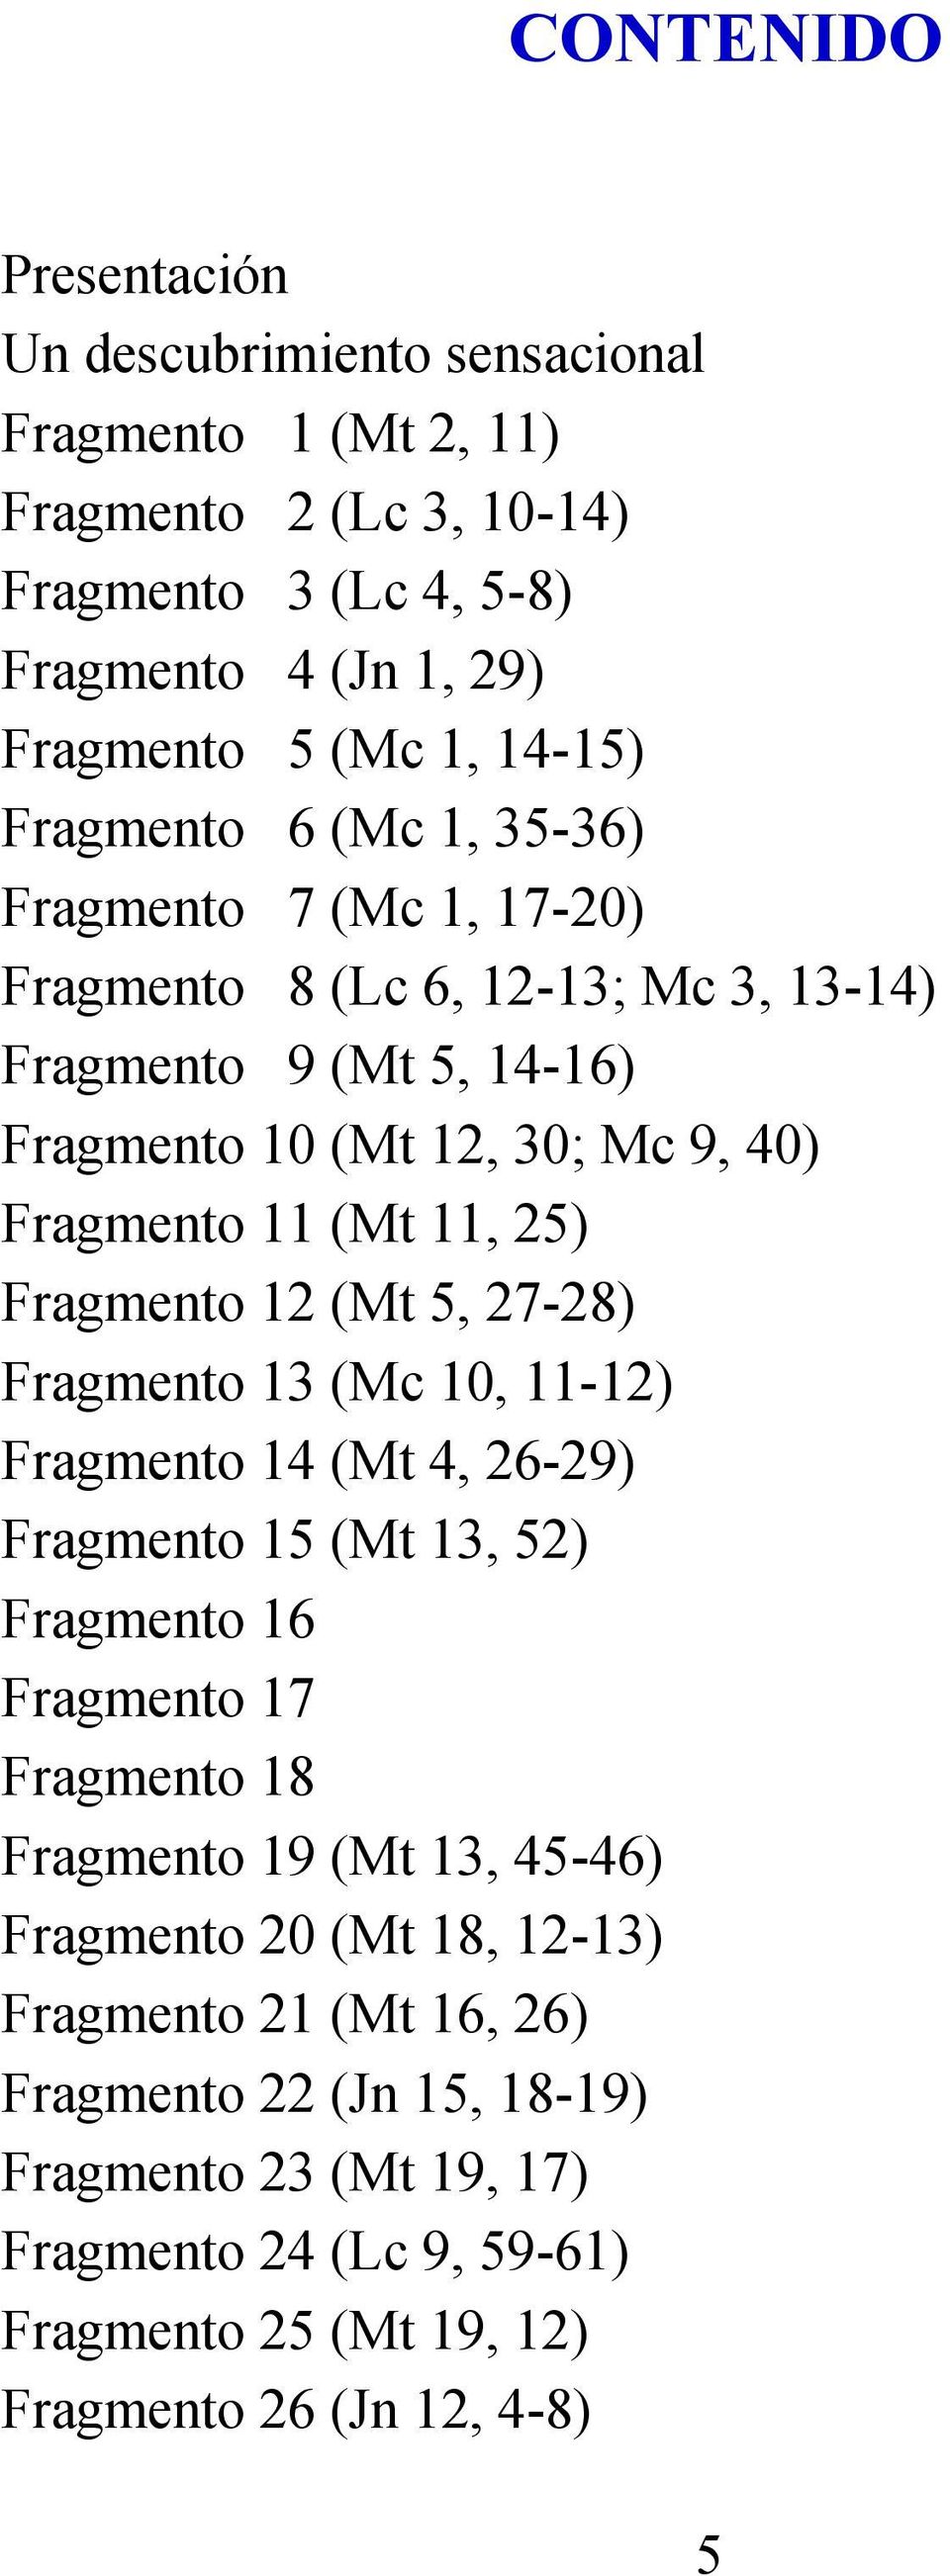 Fragmento 12 (Mt 5, 27-28) Fragmento 13 (Mc 10, 11-12) Fragmento 14 (Mt 4, 26-29) Fragmento 15 (Mt 13, 52) Fragmento 16 Fragmento 17 Fragmento 18 Fragmento 19 (Mt 13, 45-46)